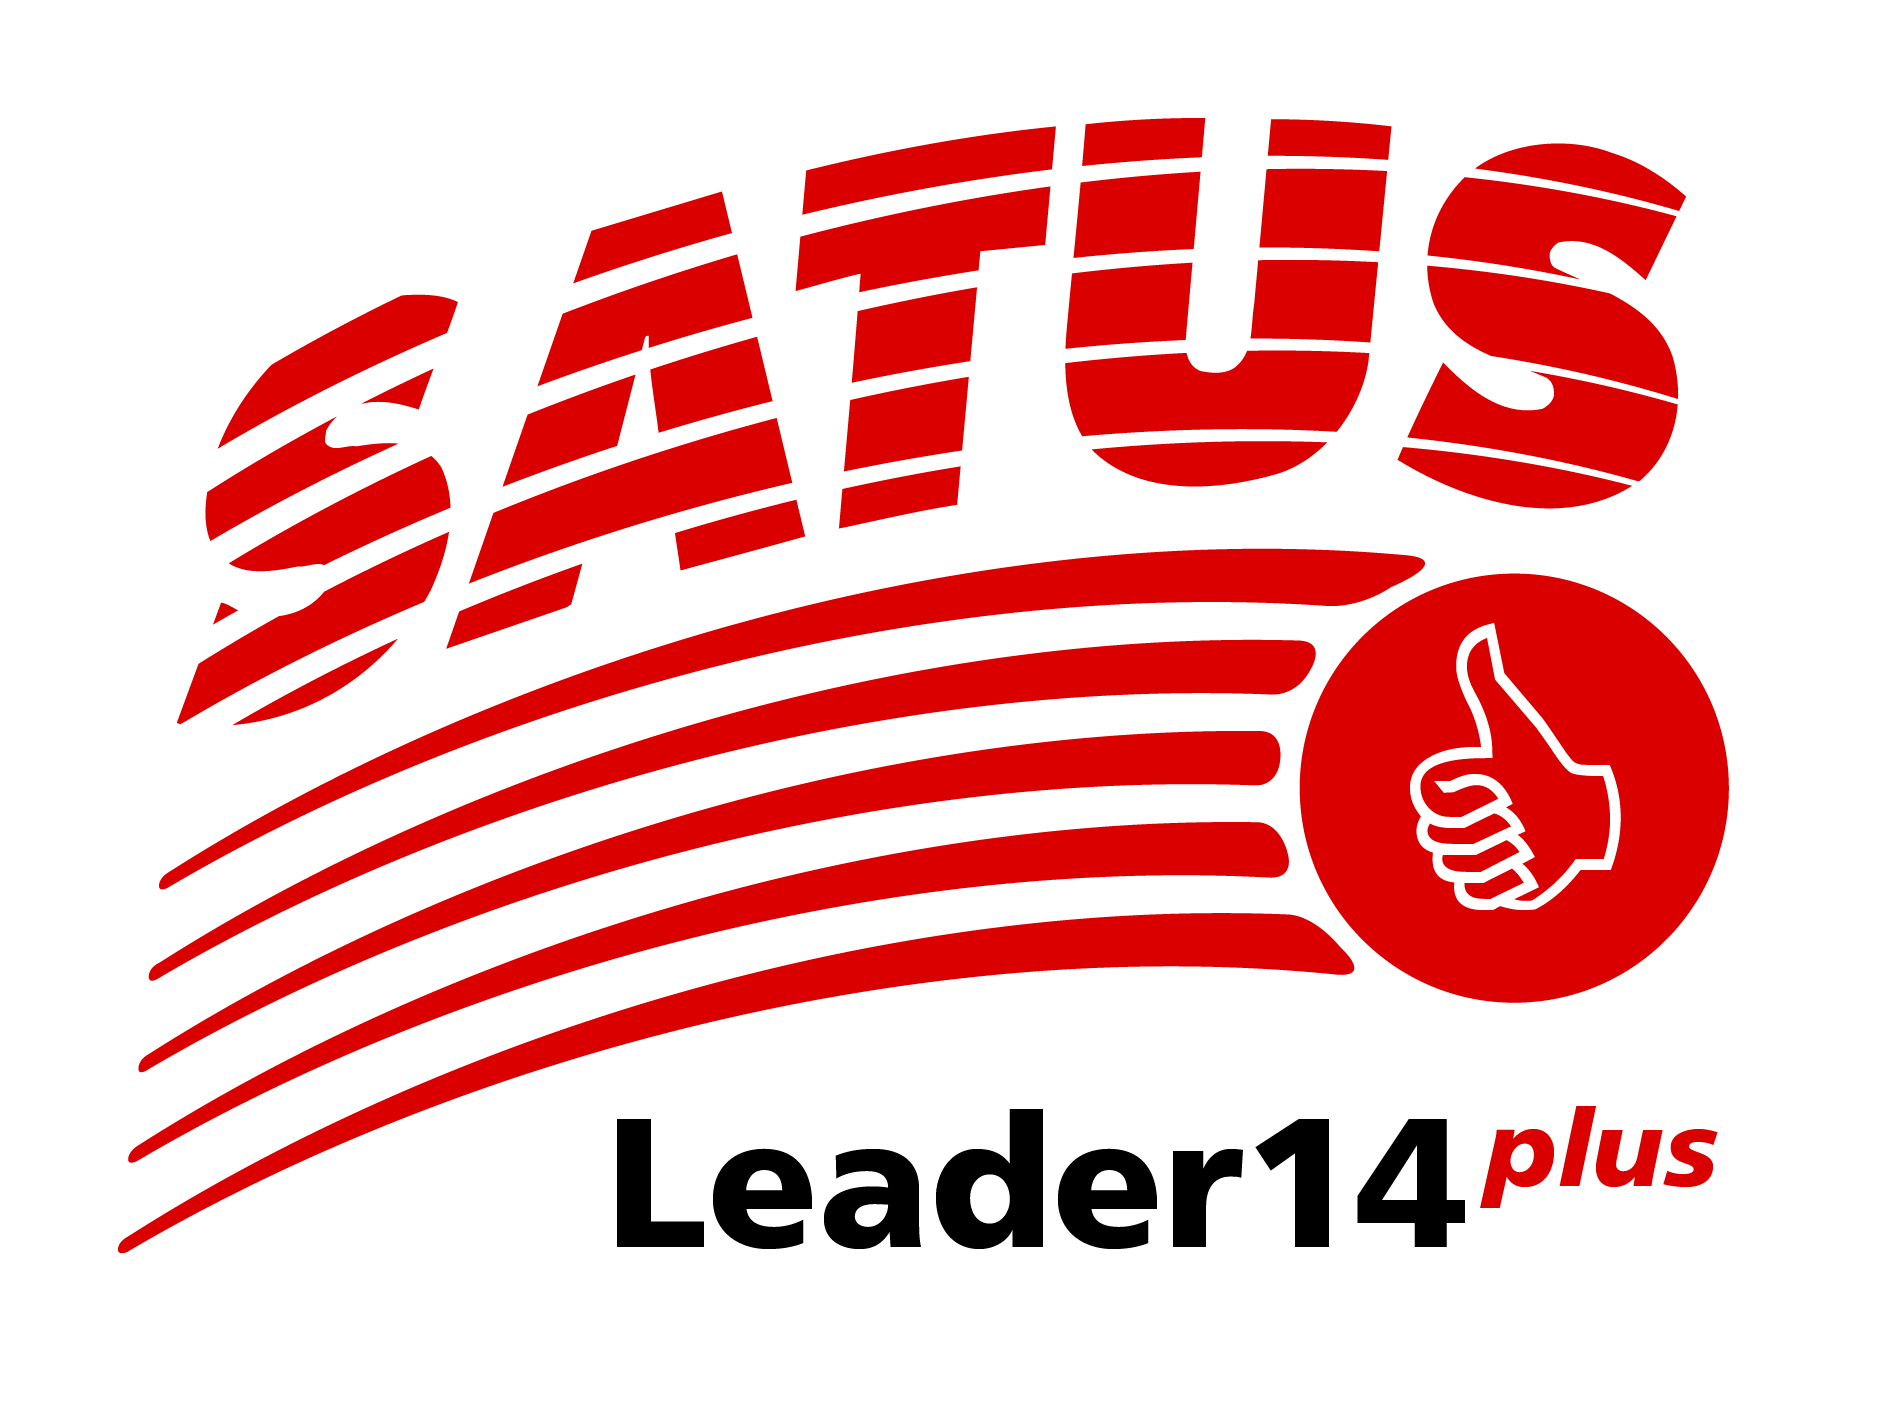 Leader14plus-Kurs auf Oktober verschoben - SATUS - Schweizer Arbeiter-, Turn- und Sportverband